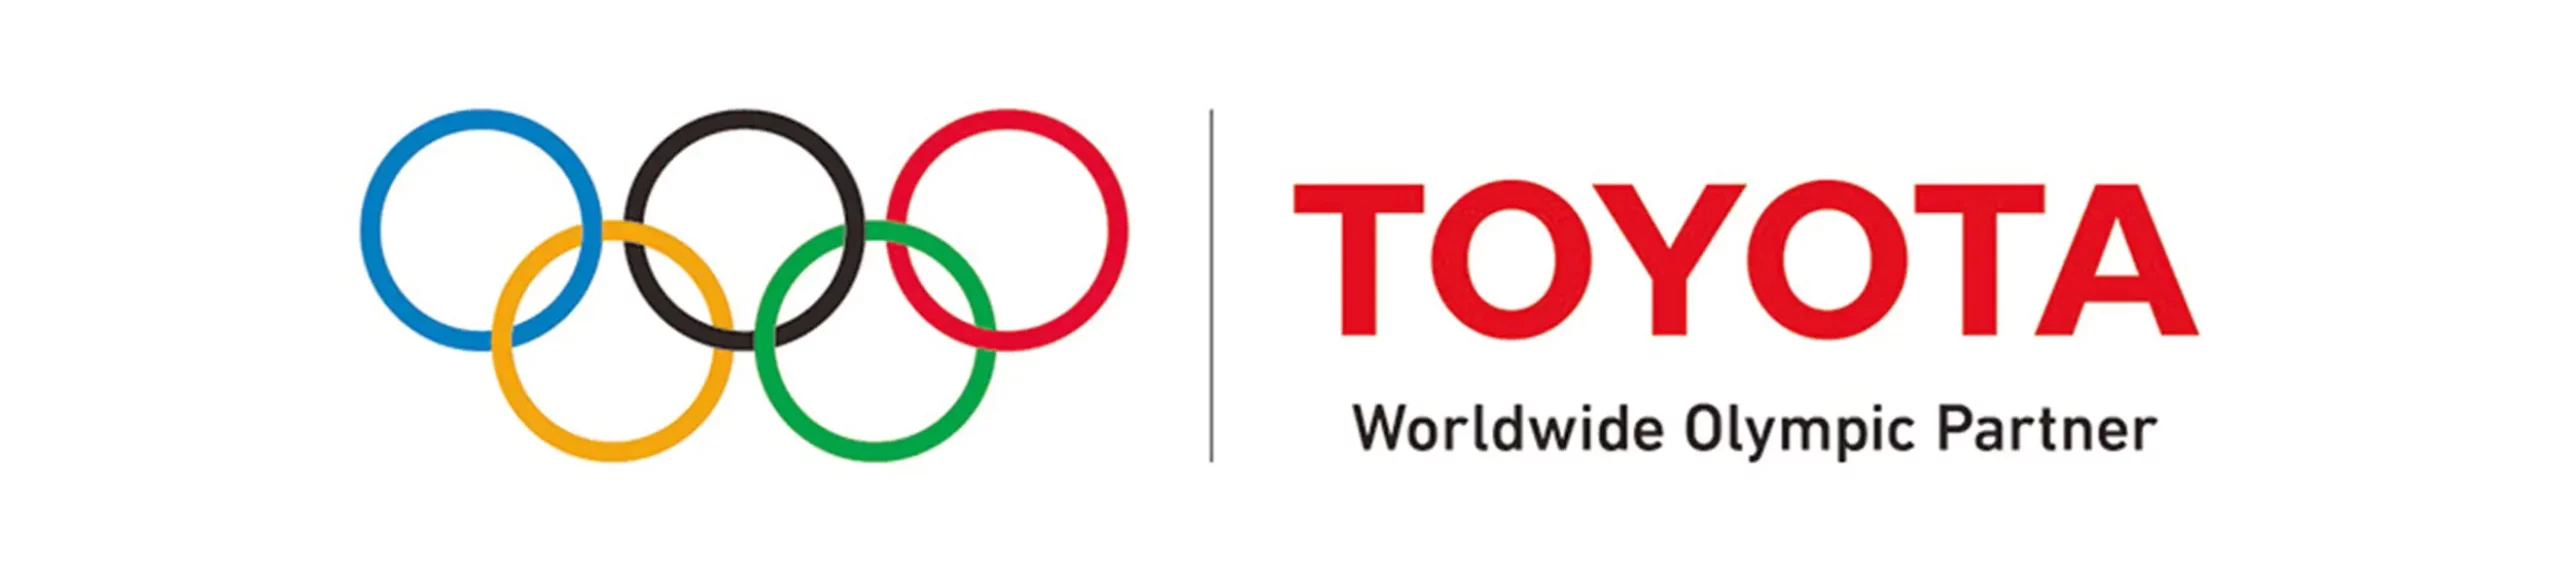 Toyota partenaires des jeux Olympiques et paralympiques